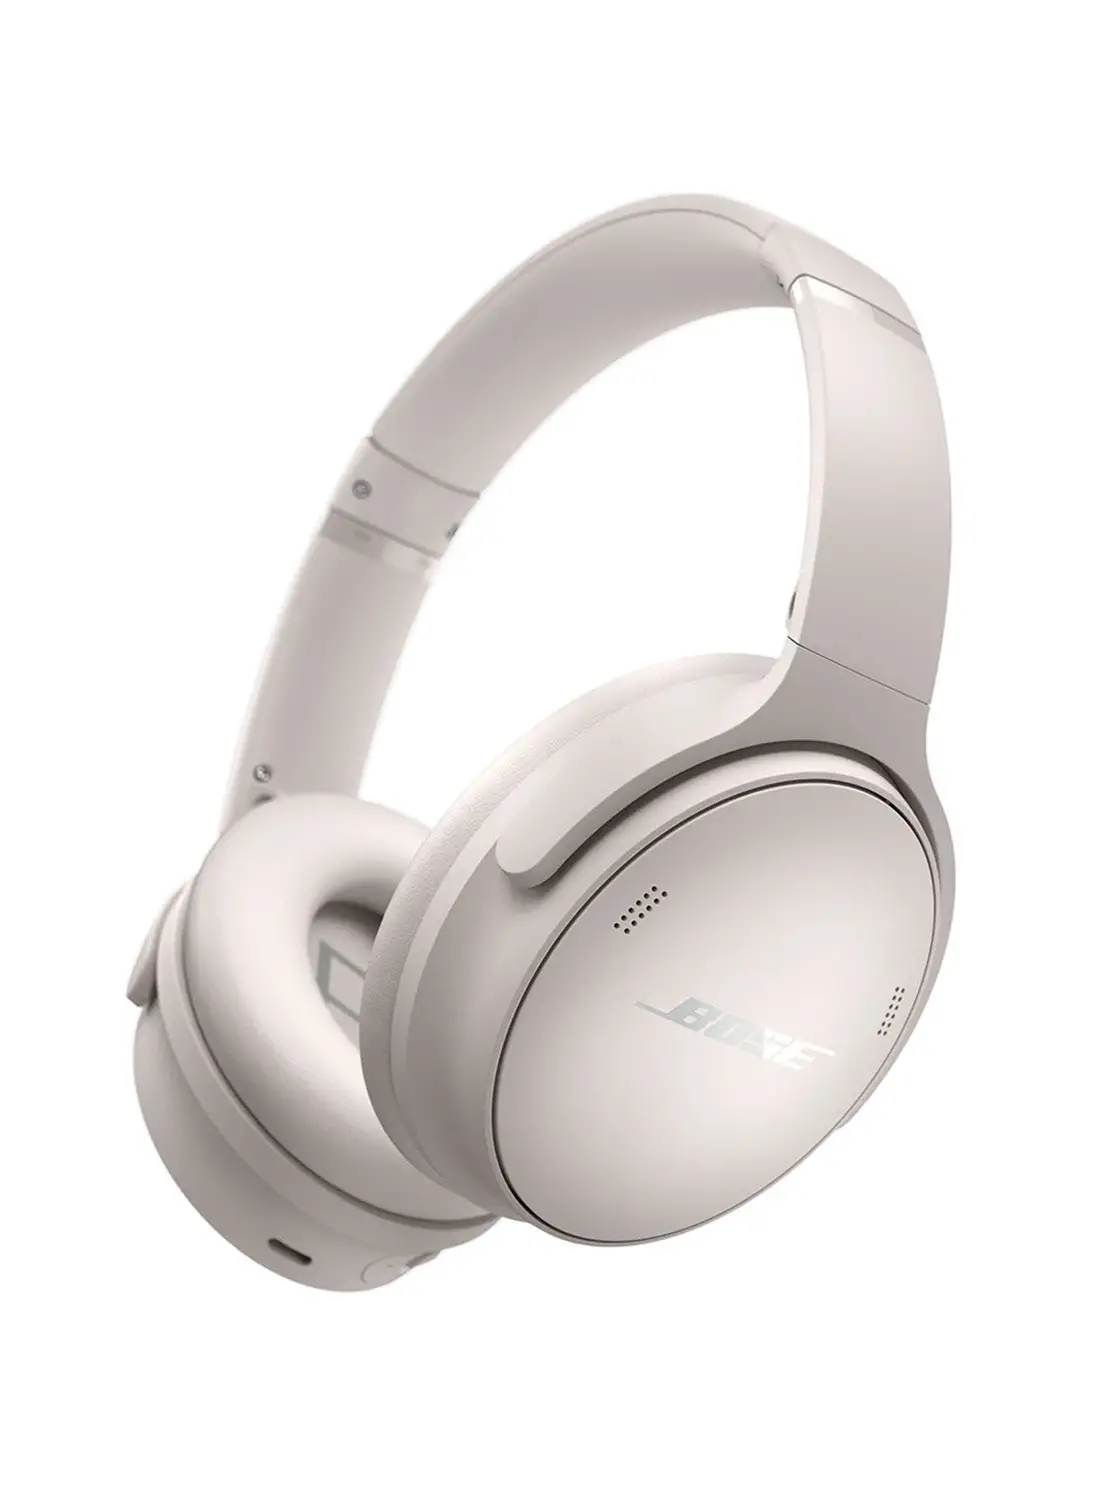 سماعات رأس Bose QuietComfort اللاسلكية المانعة للضوضاء، سماعات رأس بلوتوث فوق الأذن مع عمر بطارية يصل إلى 24 ساعة، أبيض